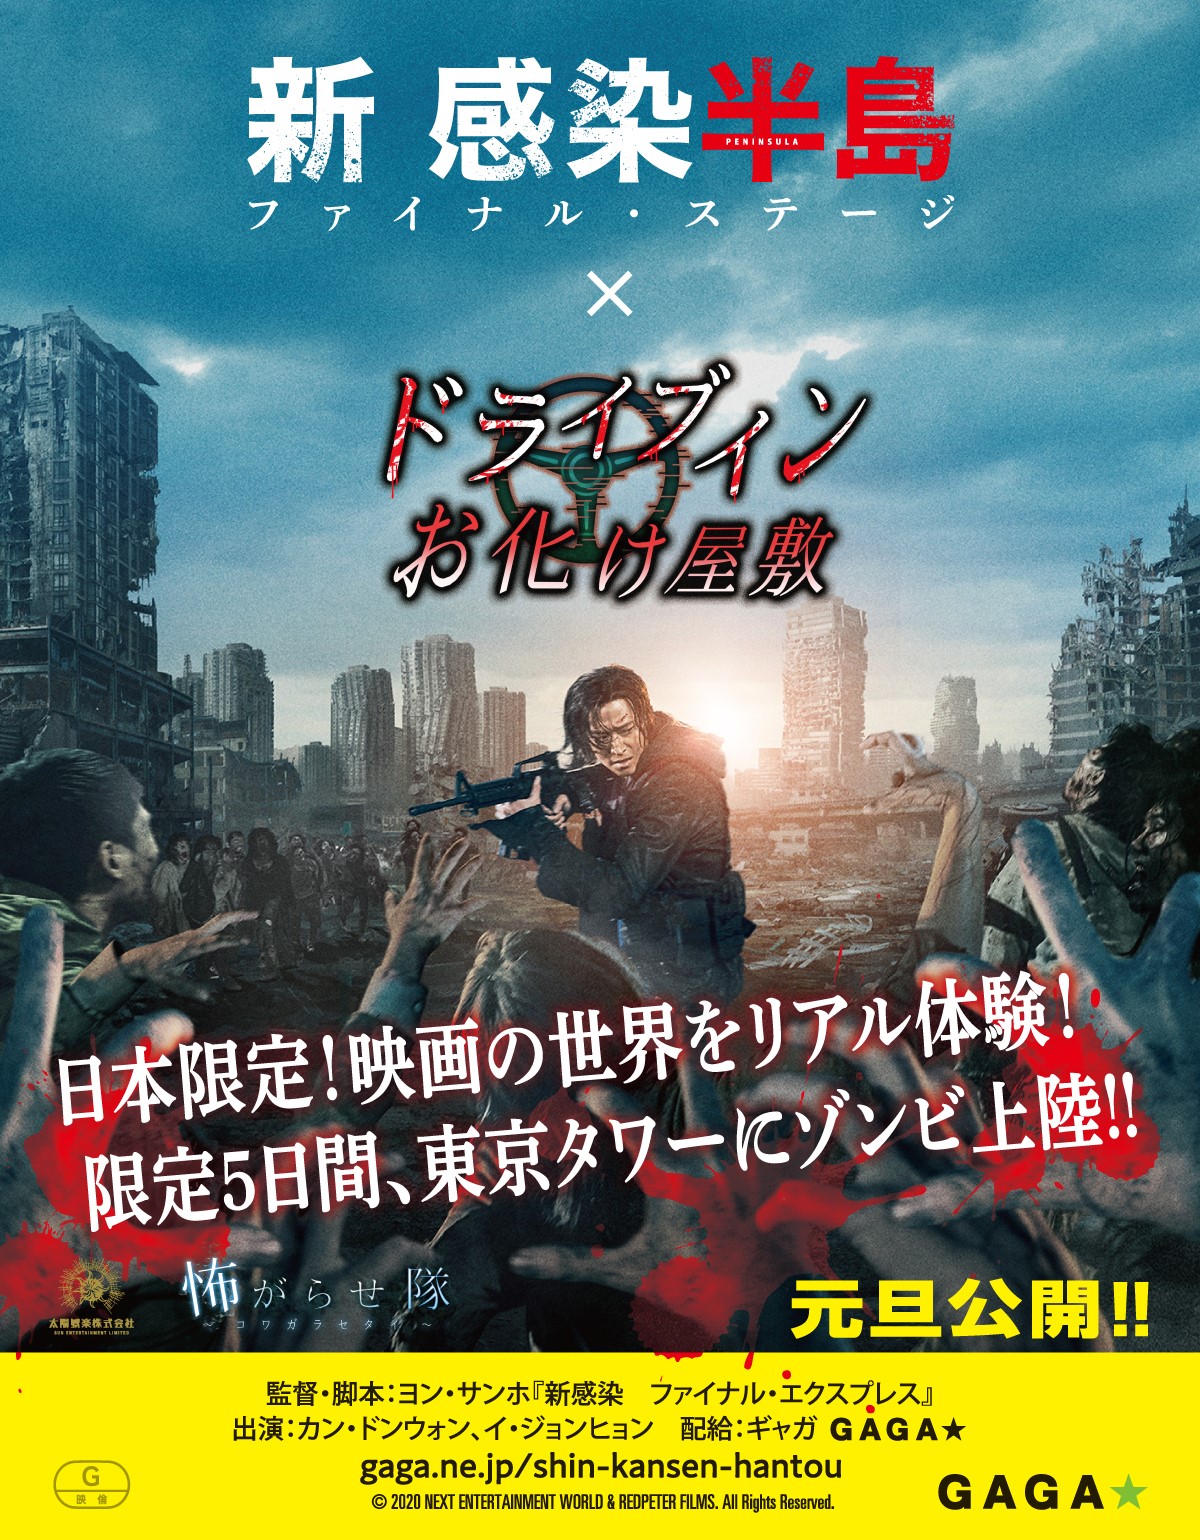 映画 新感染半島 コラボの ドライブインお化け屋敷 開催 東京タワーで12月30日から 映画スクエア